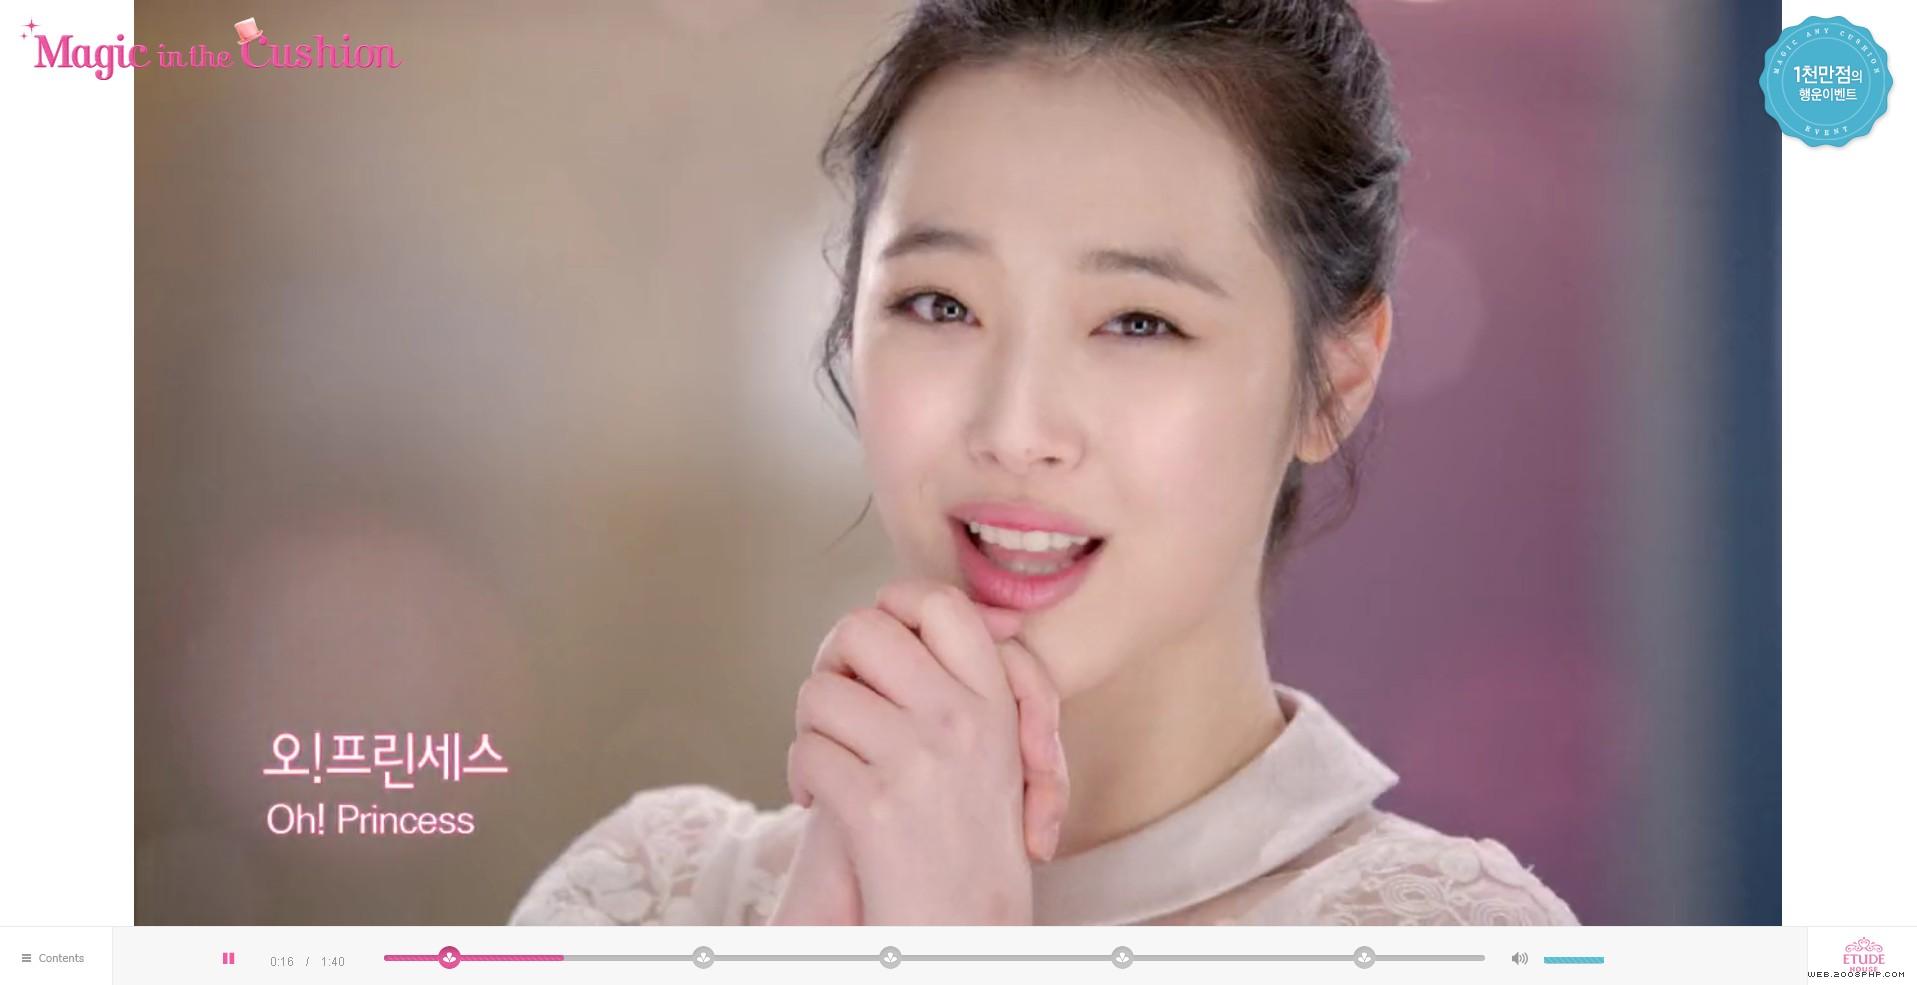 分享美丽!韩国ETUDE爱丽女性美容粉底产品展